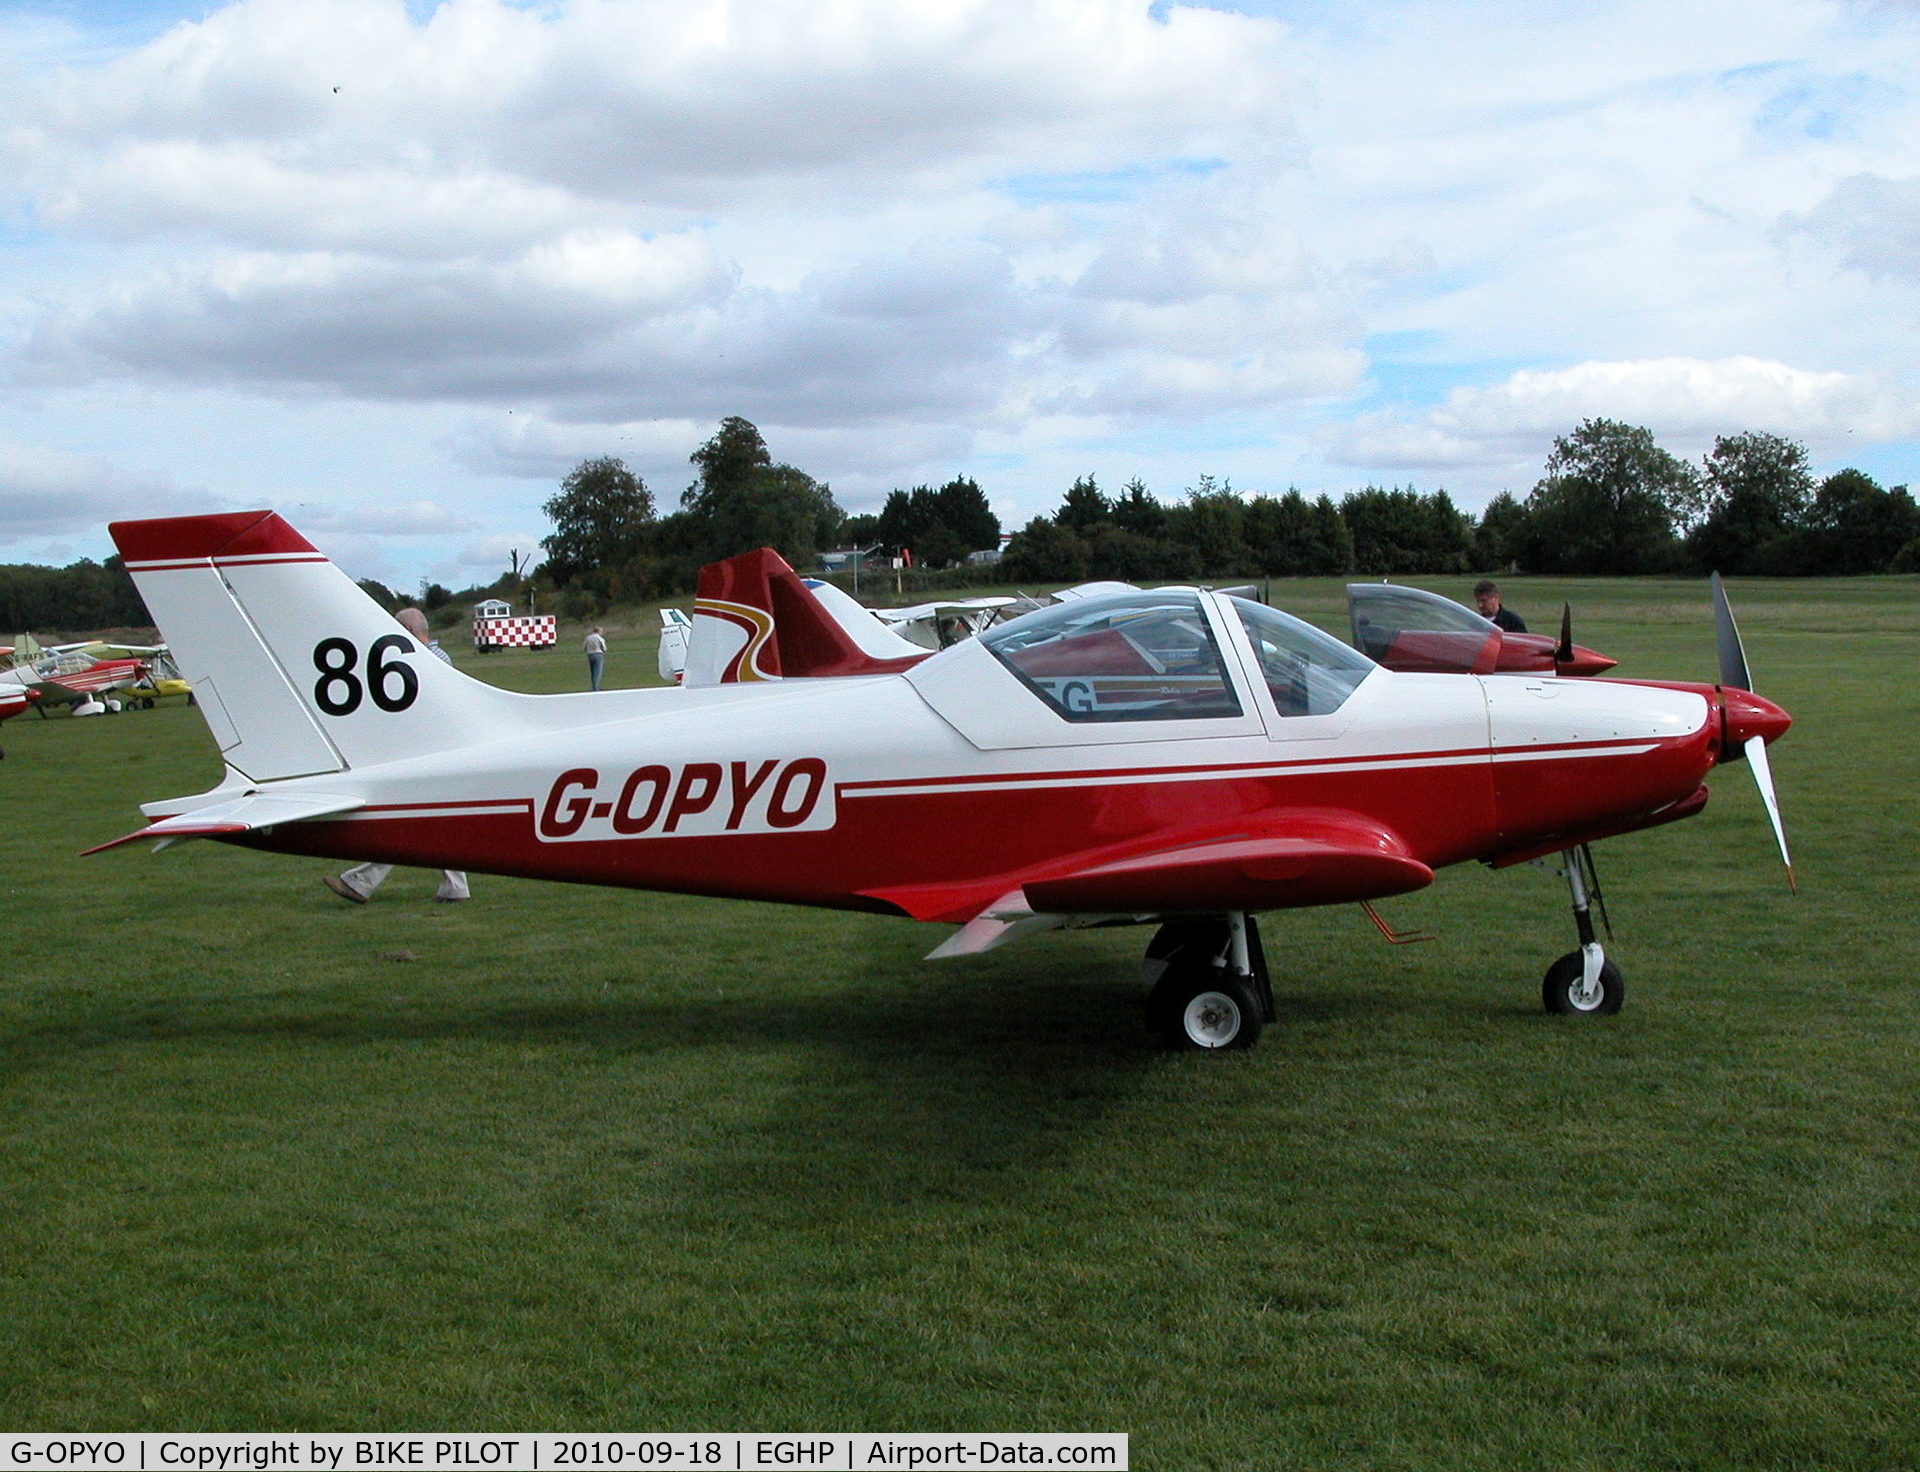 G-OPYO, 2009 Alpi Aviation Pioneer 300 Hawk C/N PFA 330A-14597, Pioneer 300 with race number